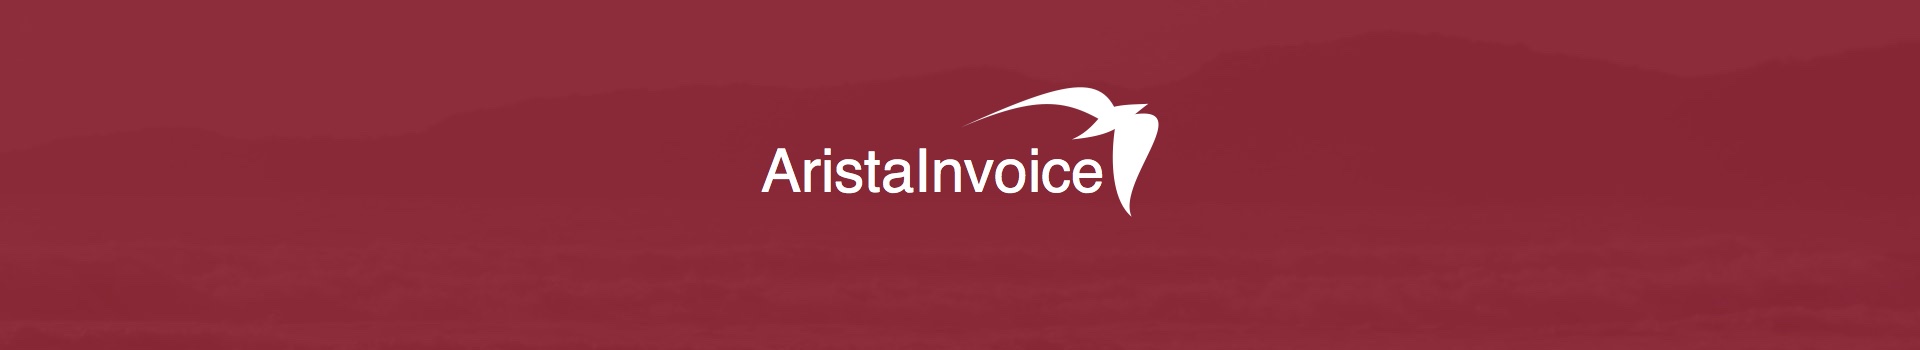 Rechnungseingang workflow-gestützt digitalisieren und bearbeiten mit AristaInvoice